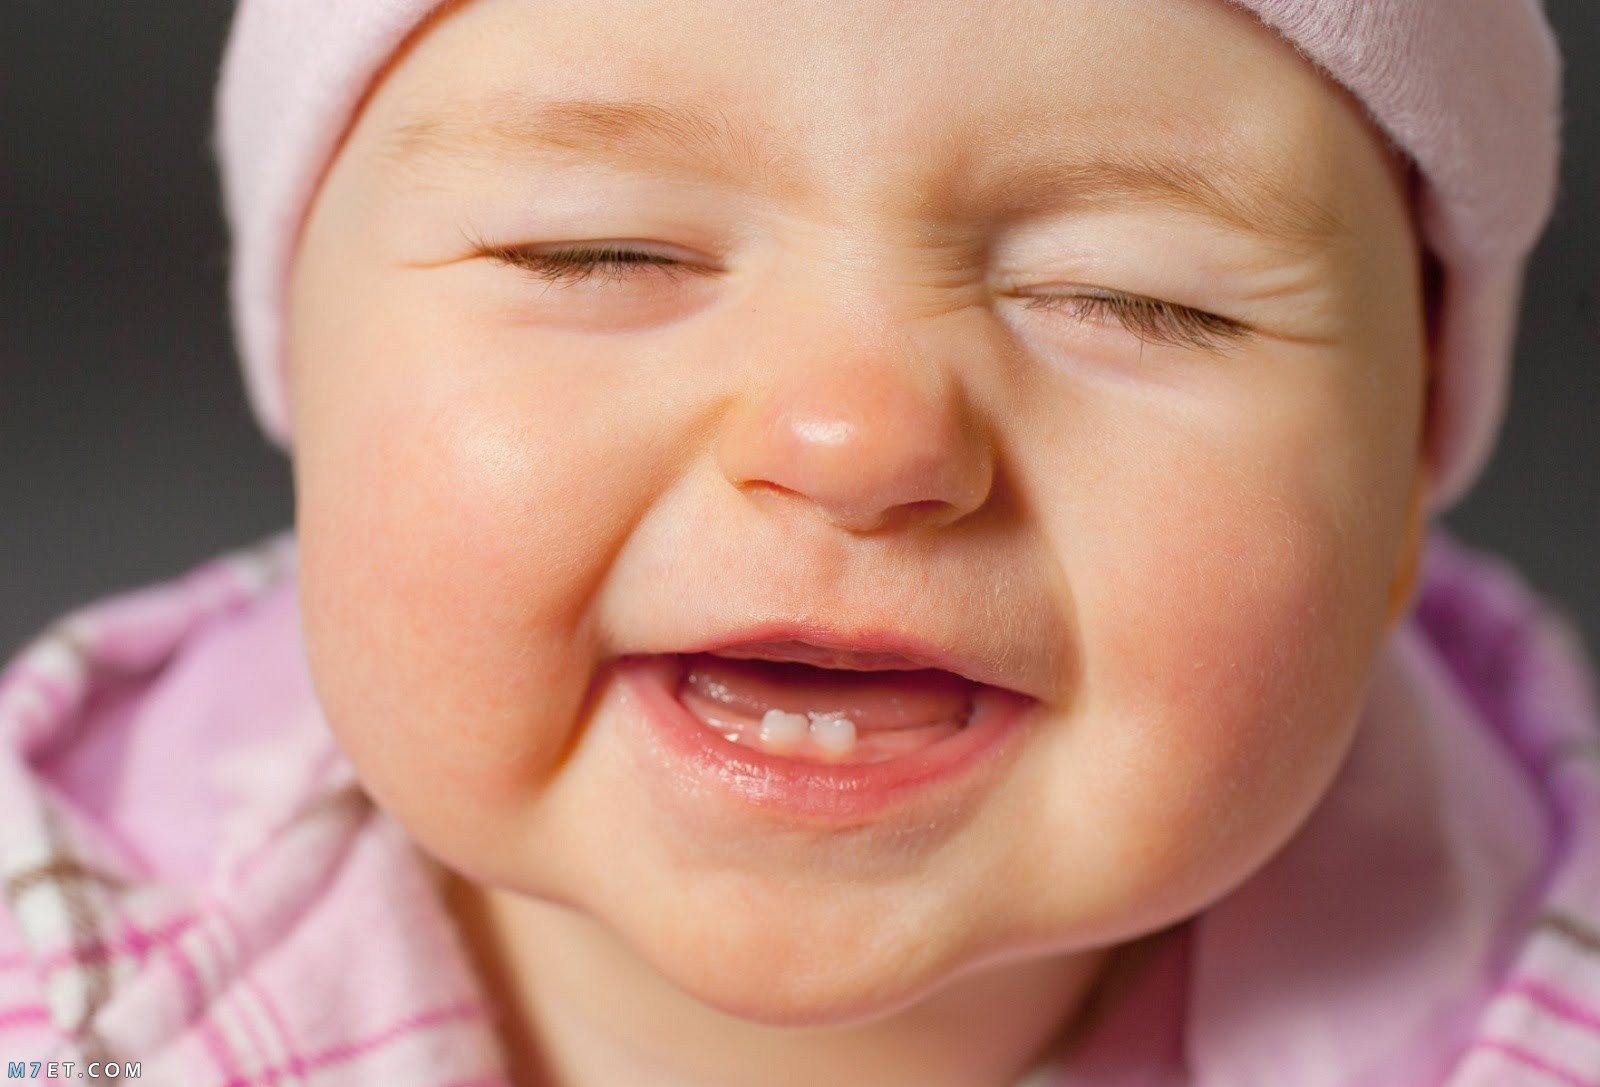 وقت ظهور الاسنان عند الاطفال